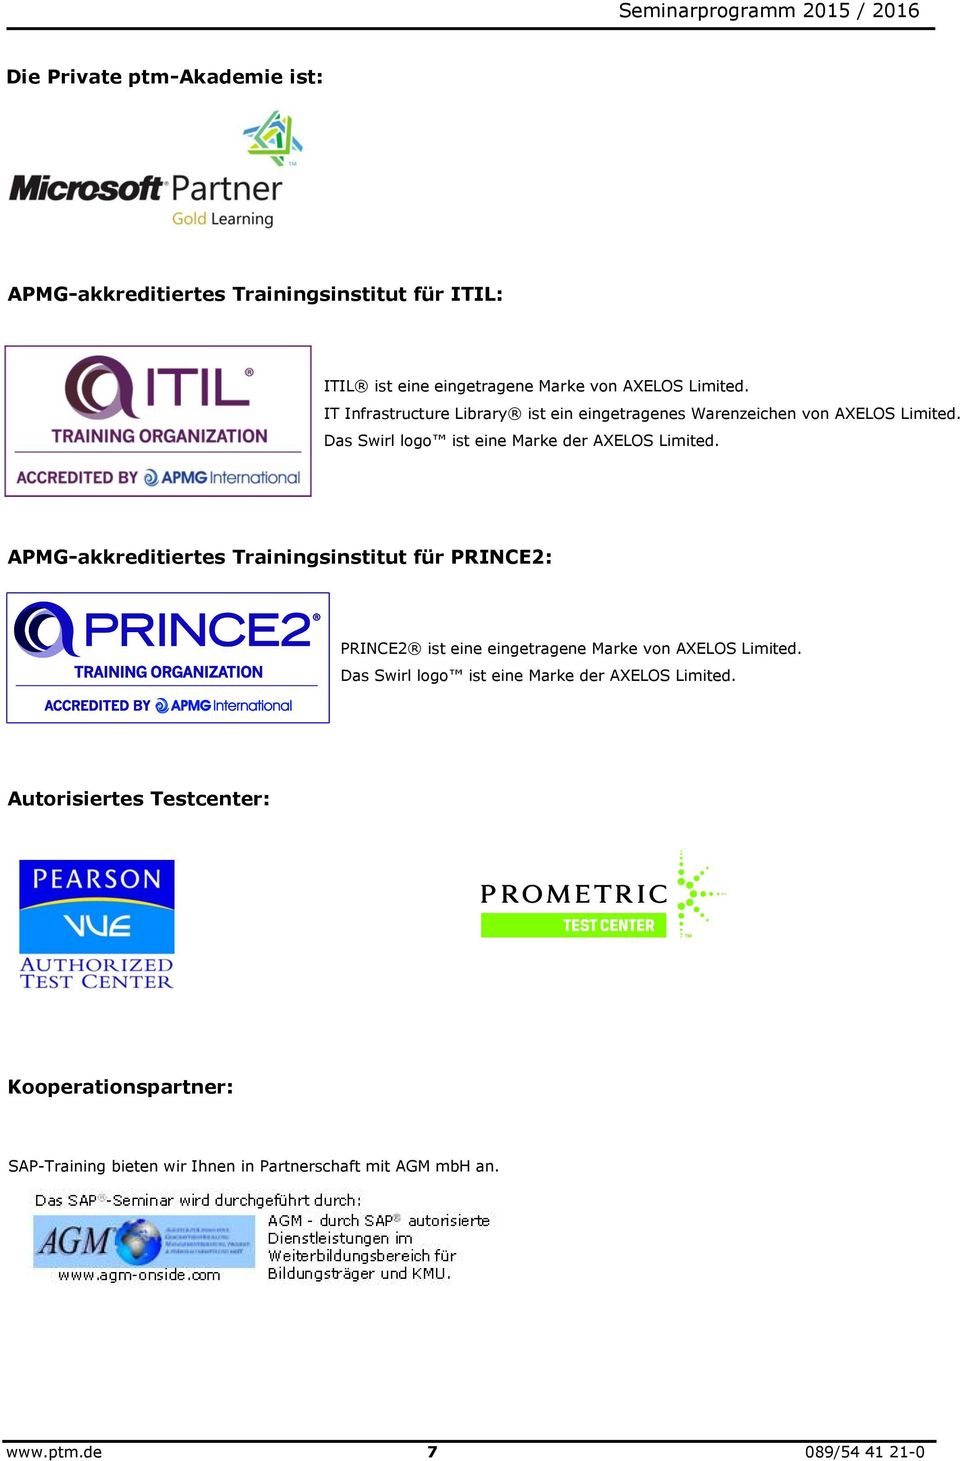 APMG-akkreditiertes Trainingsinstitut für PRINCE2: PRINCE2 ist eine eingetragene Marke von AXELOS Limited.